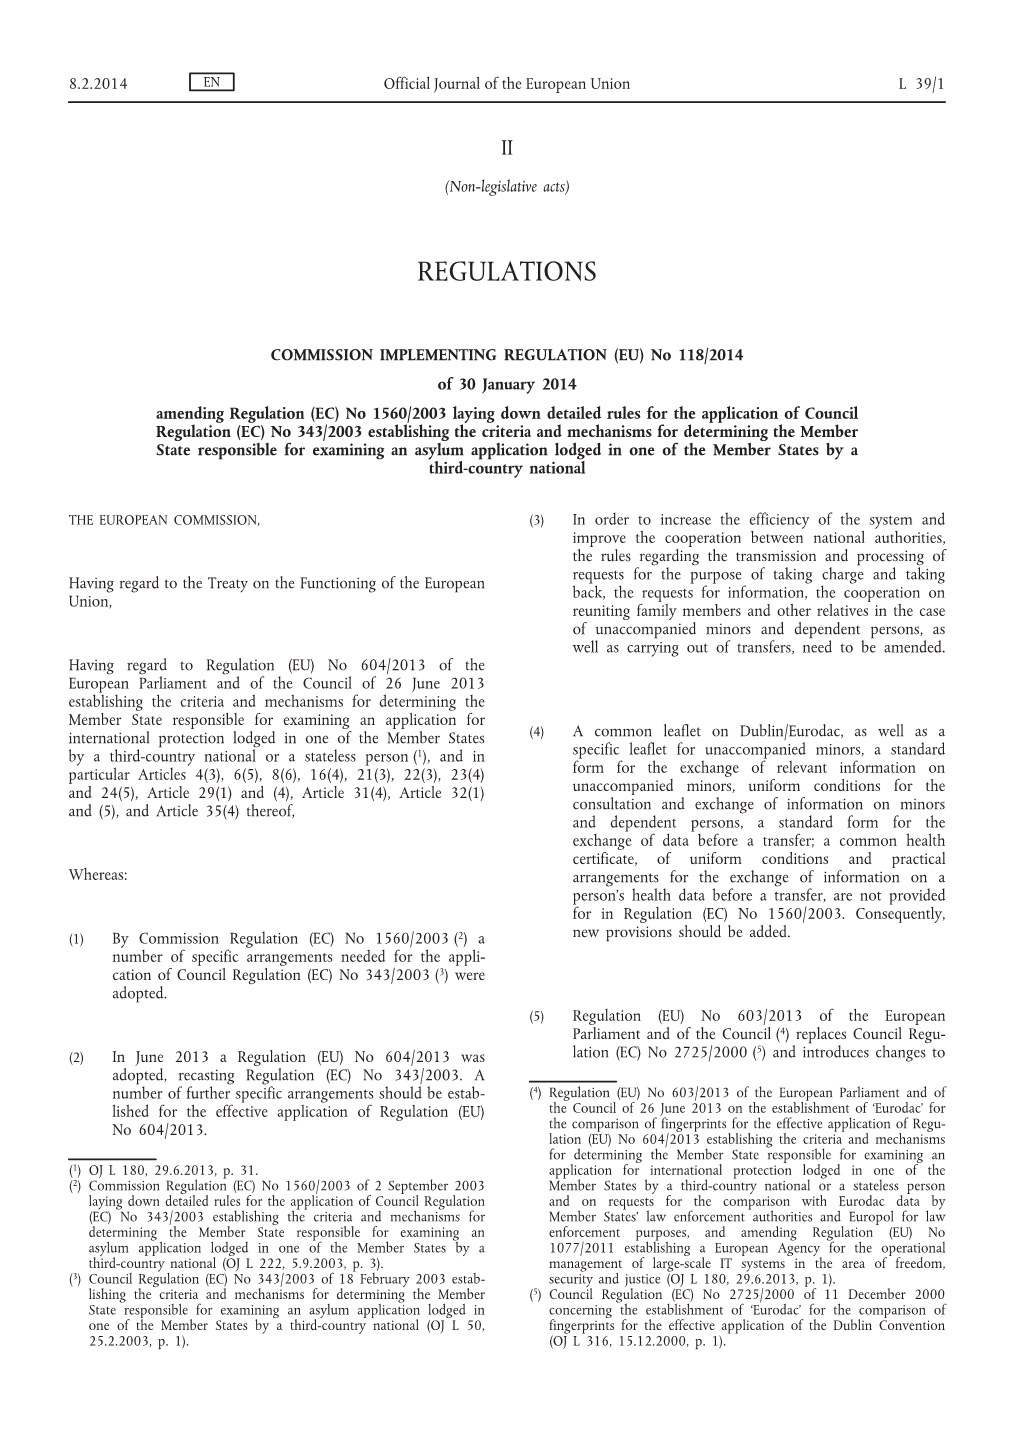 EU) No 118/2014 of 30 January 2014 Amending Regulation (EC